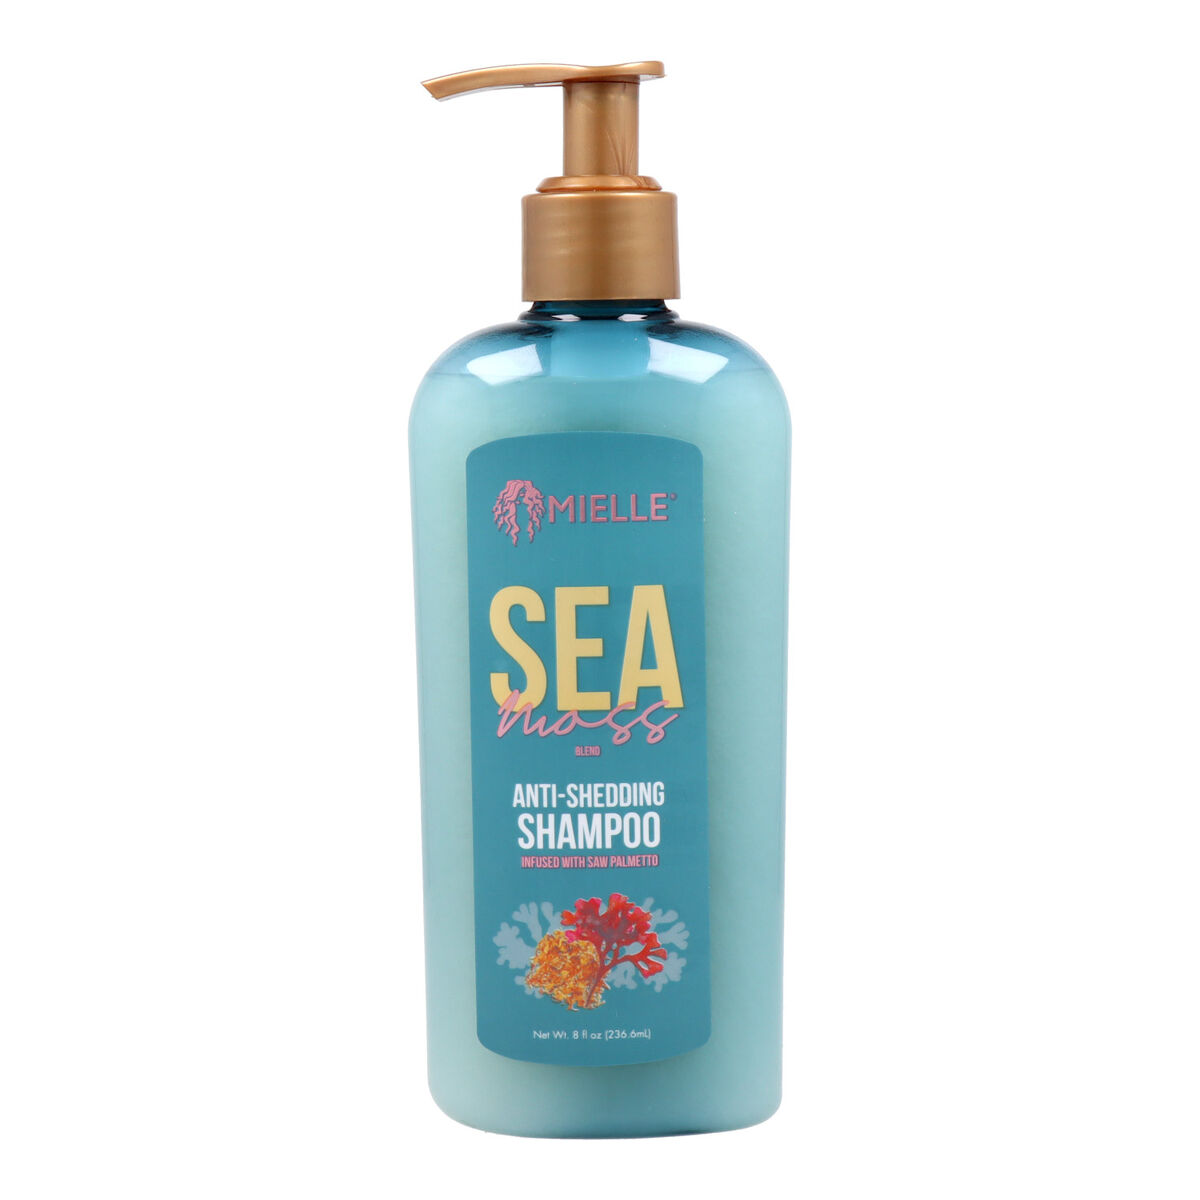 Șampon Mielle Sea Moss (236 ml)